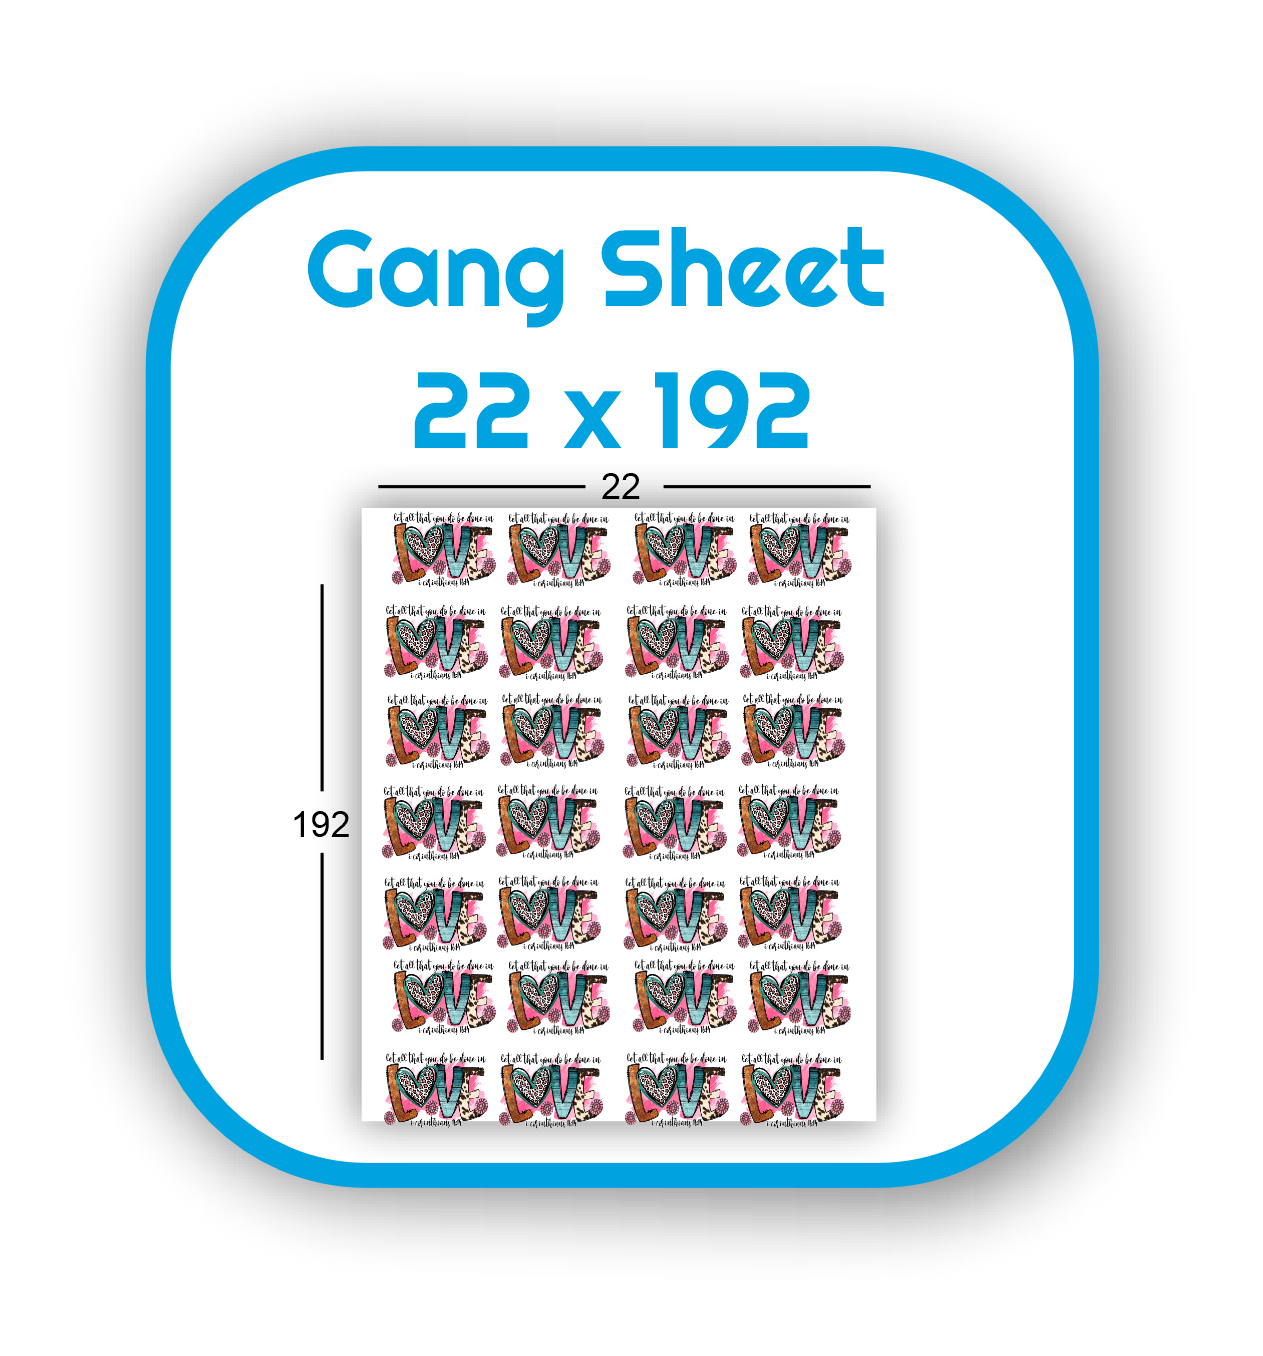 gang-sheet-22x192